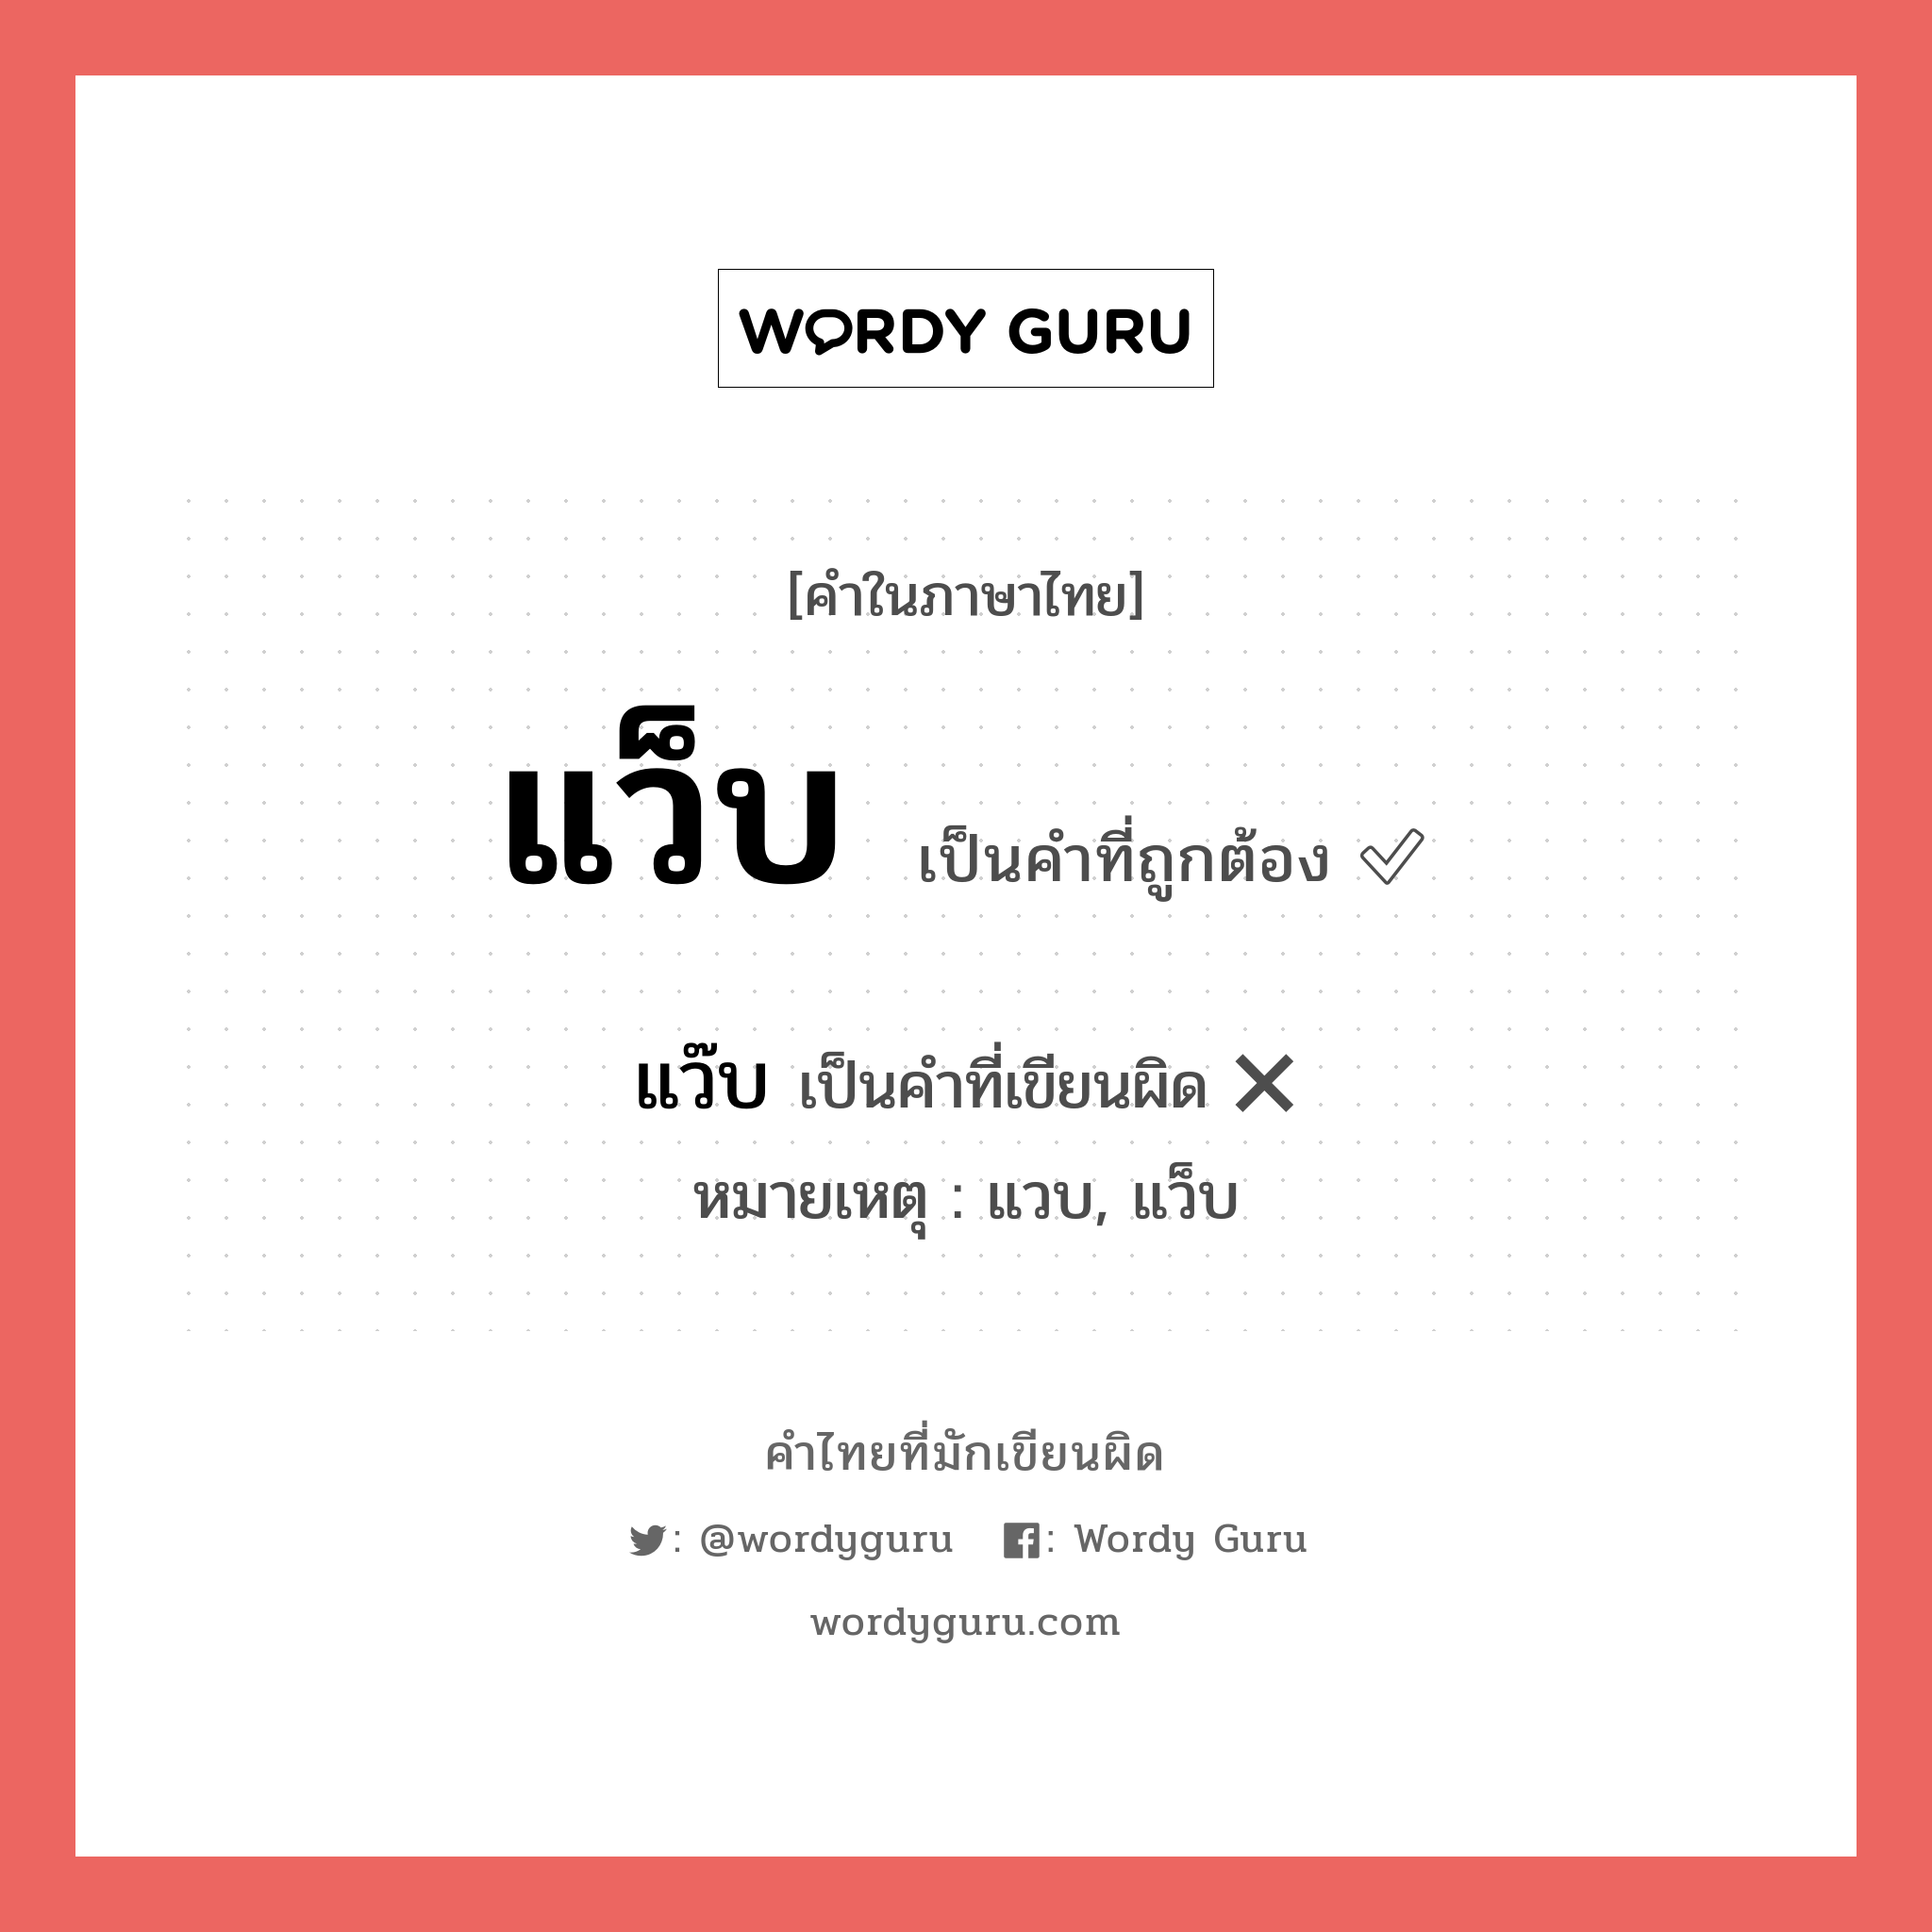 แว็บ หรือ แว๊บ เขียนยังไง? คำไหนเขียนถูก?, คำในภาษาไทยที่มักเขียนผิด แว็บ คำที่ผิด ❌ แว๊บ หมายเหตุ แวบ, แว็บ